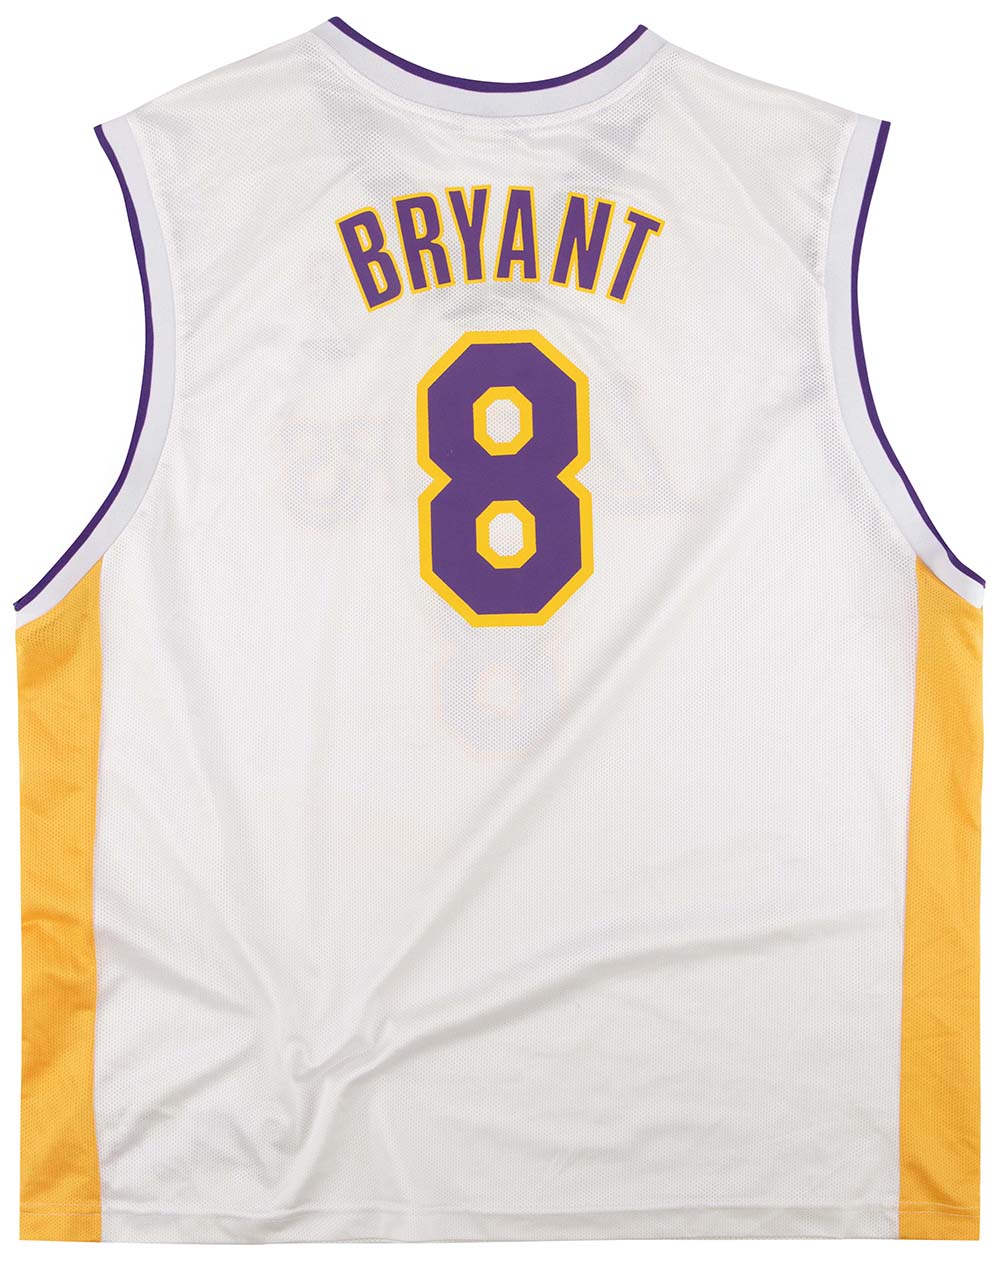 Kobe Bryant #8 LOS ANGELES LA LAKERS Reebok NBA jersey Kids Boys SZ (7)